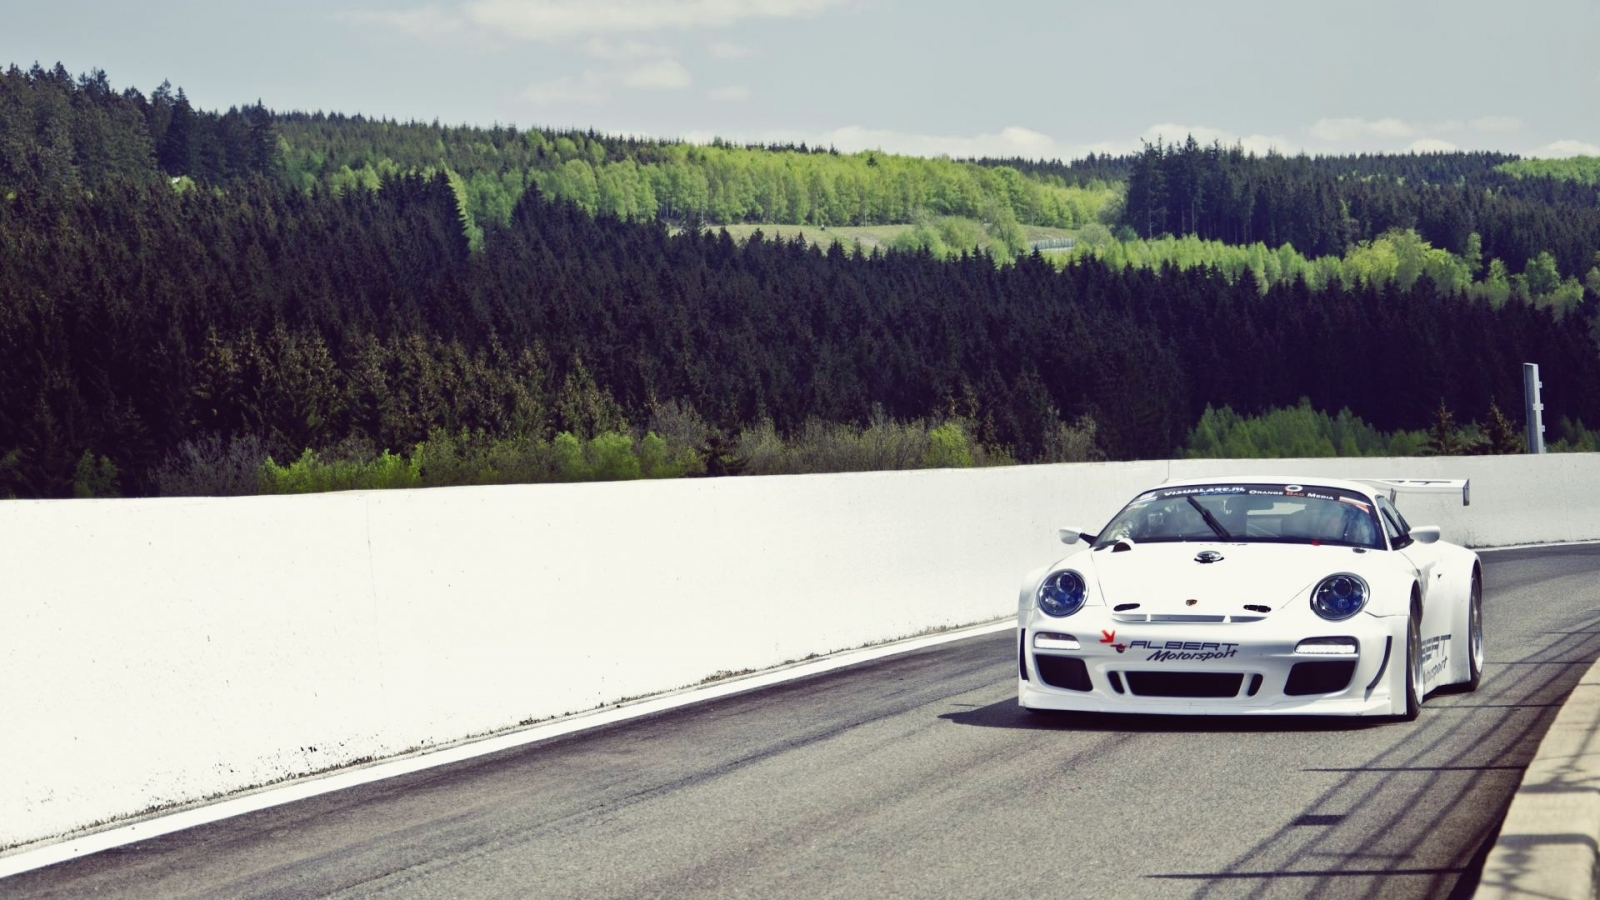 Porsche 911, mountains, racing cars, , vehicles, Porsche, Porsche 911 Carrera S, cars